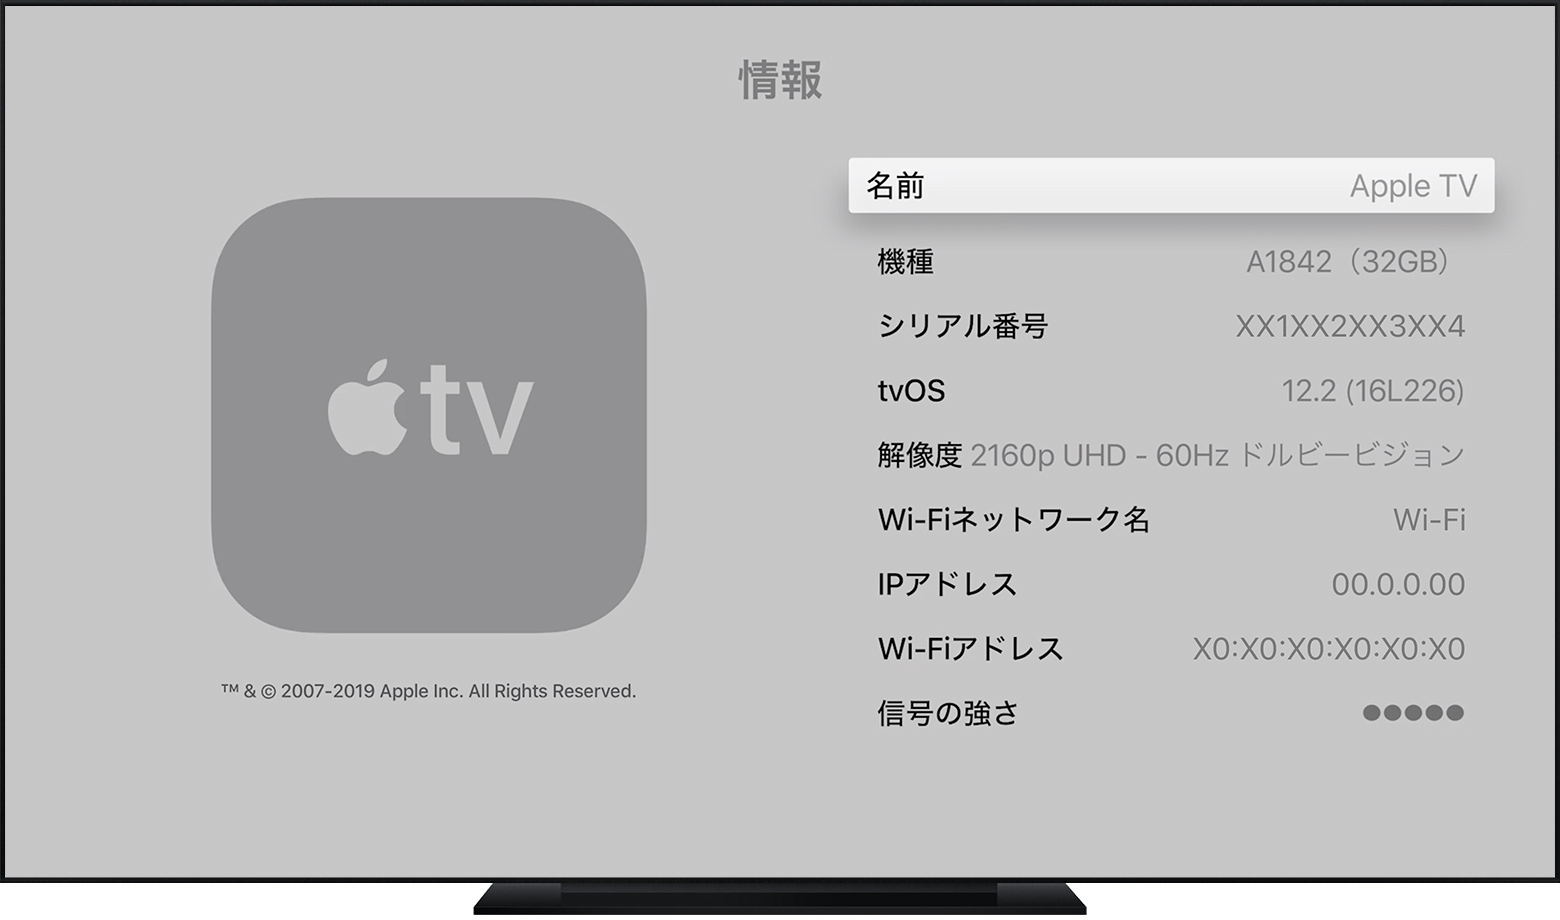 Apple TV のシリアル番号を確認する - Apple サポート (日本)